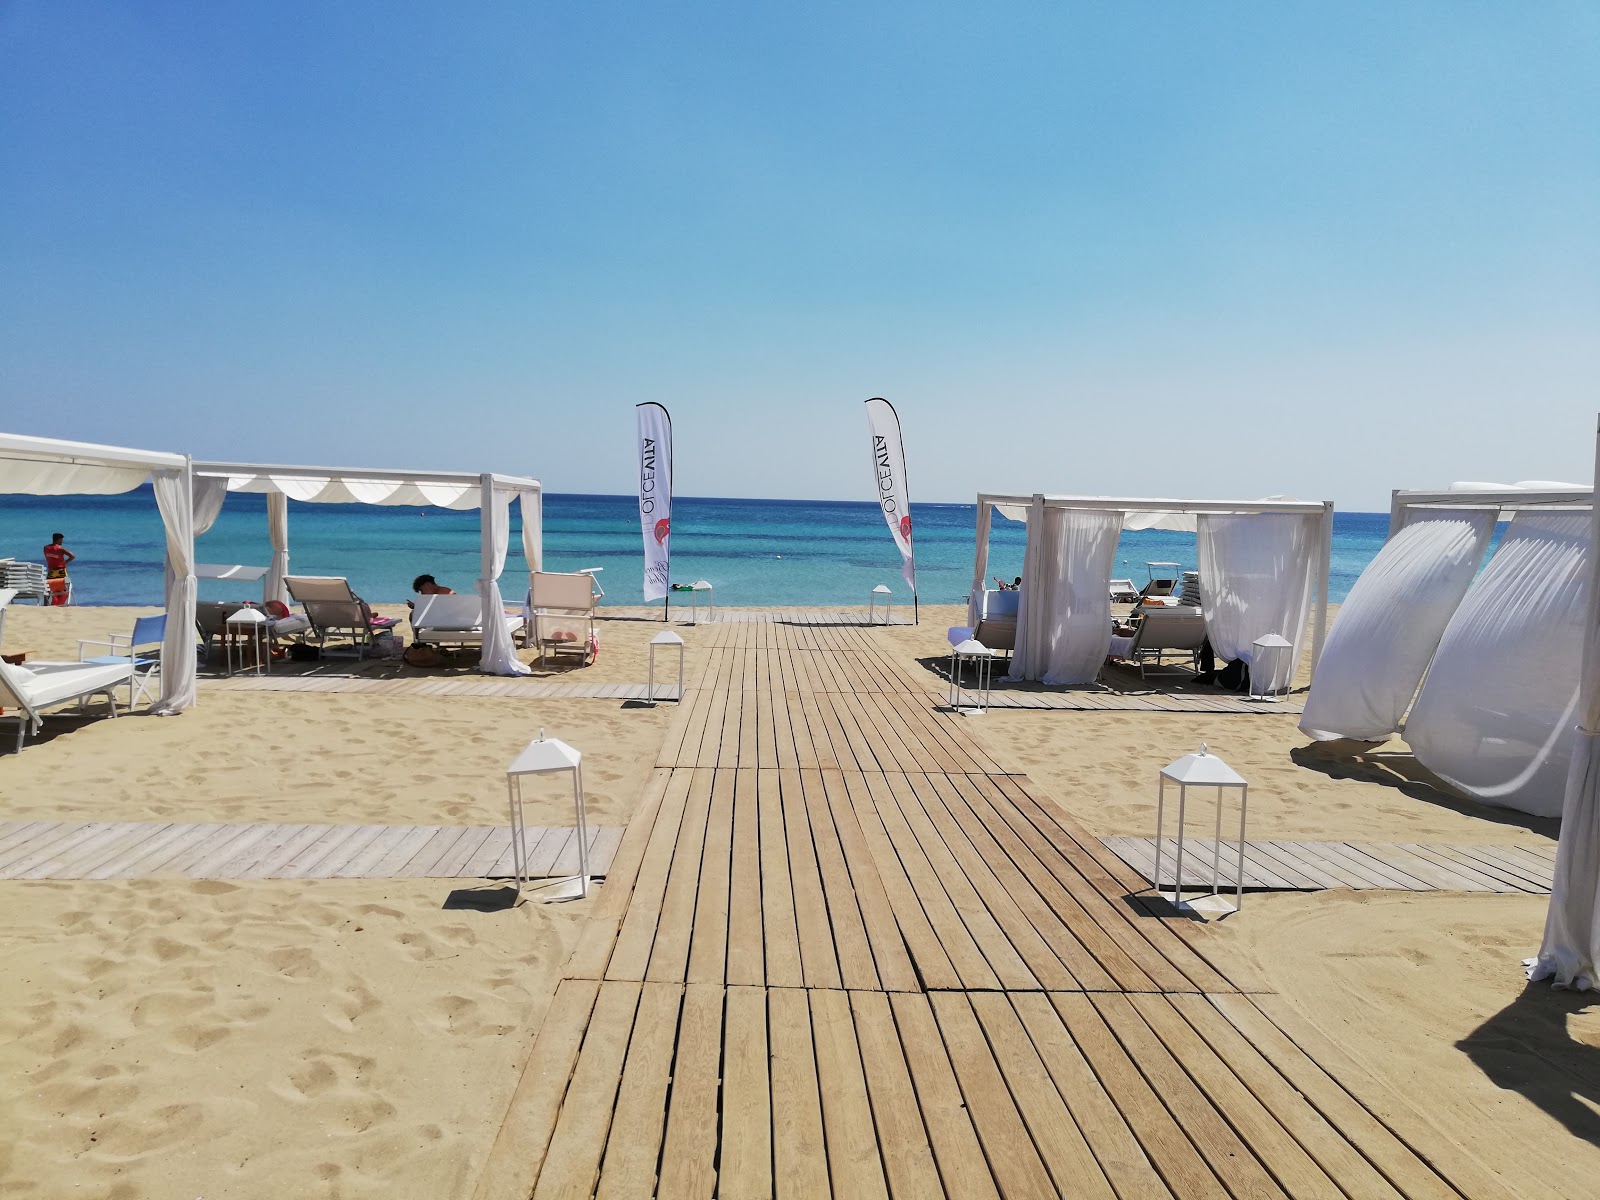 Foto de Spiaggia di Campo dei Messapi - lugar popular entre los conocedores del relax